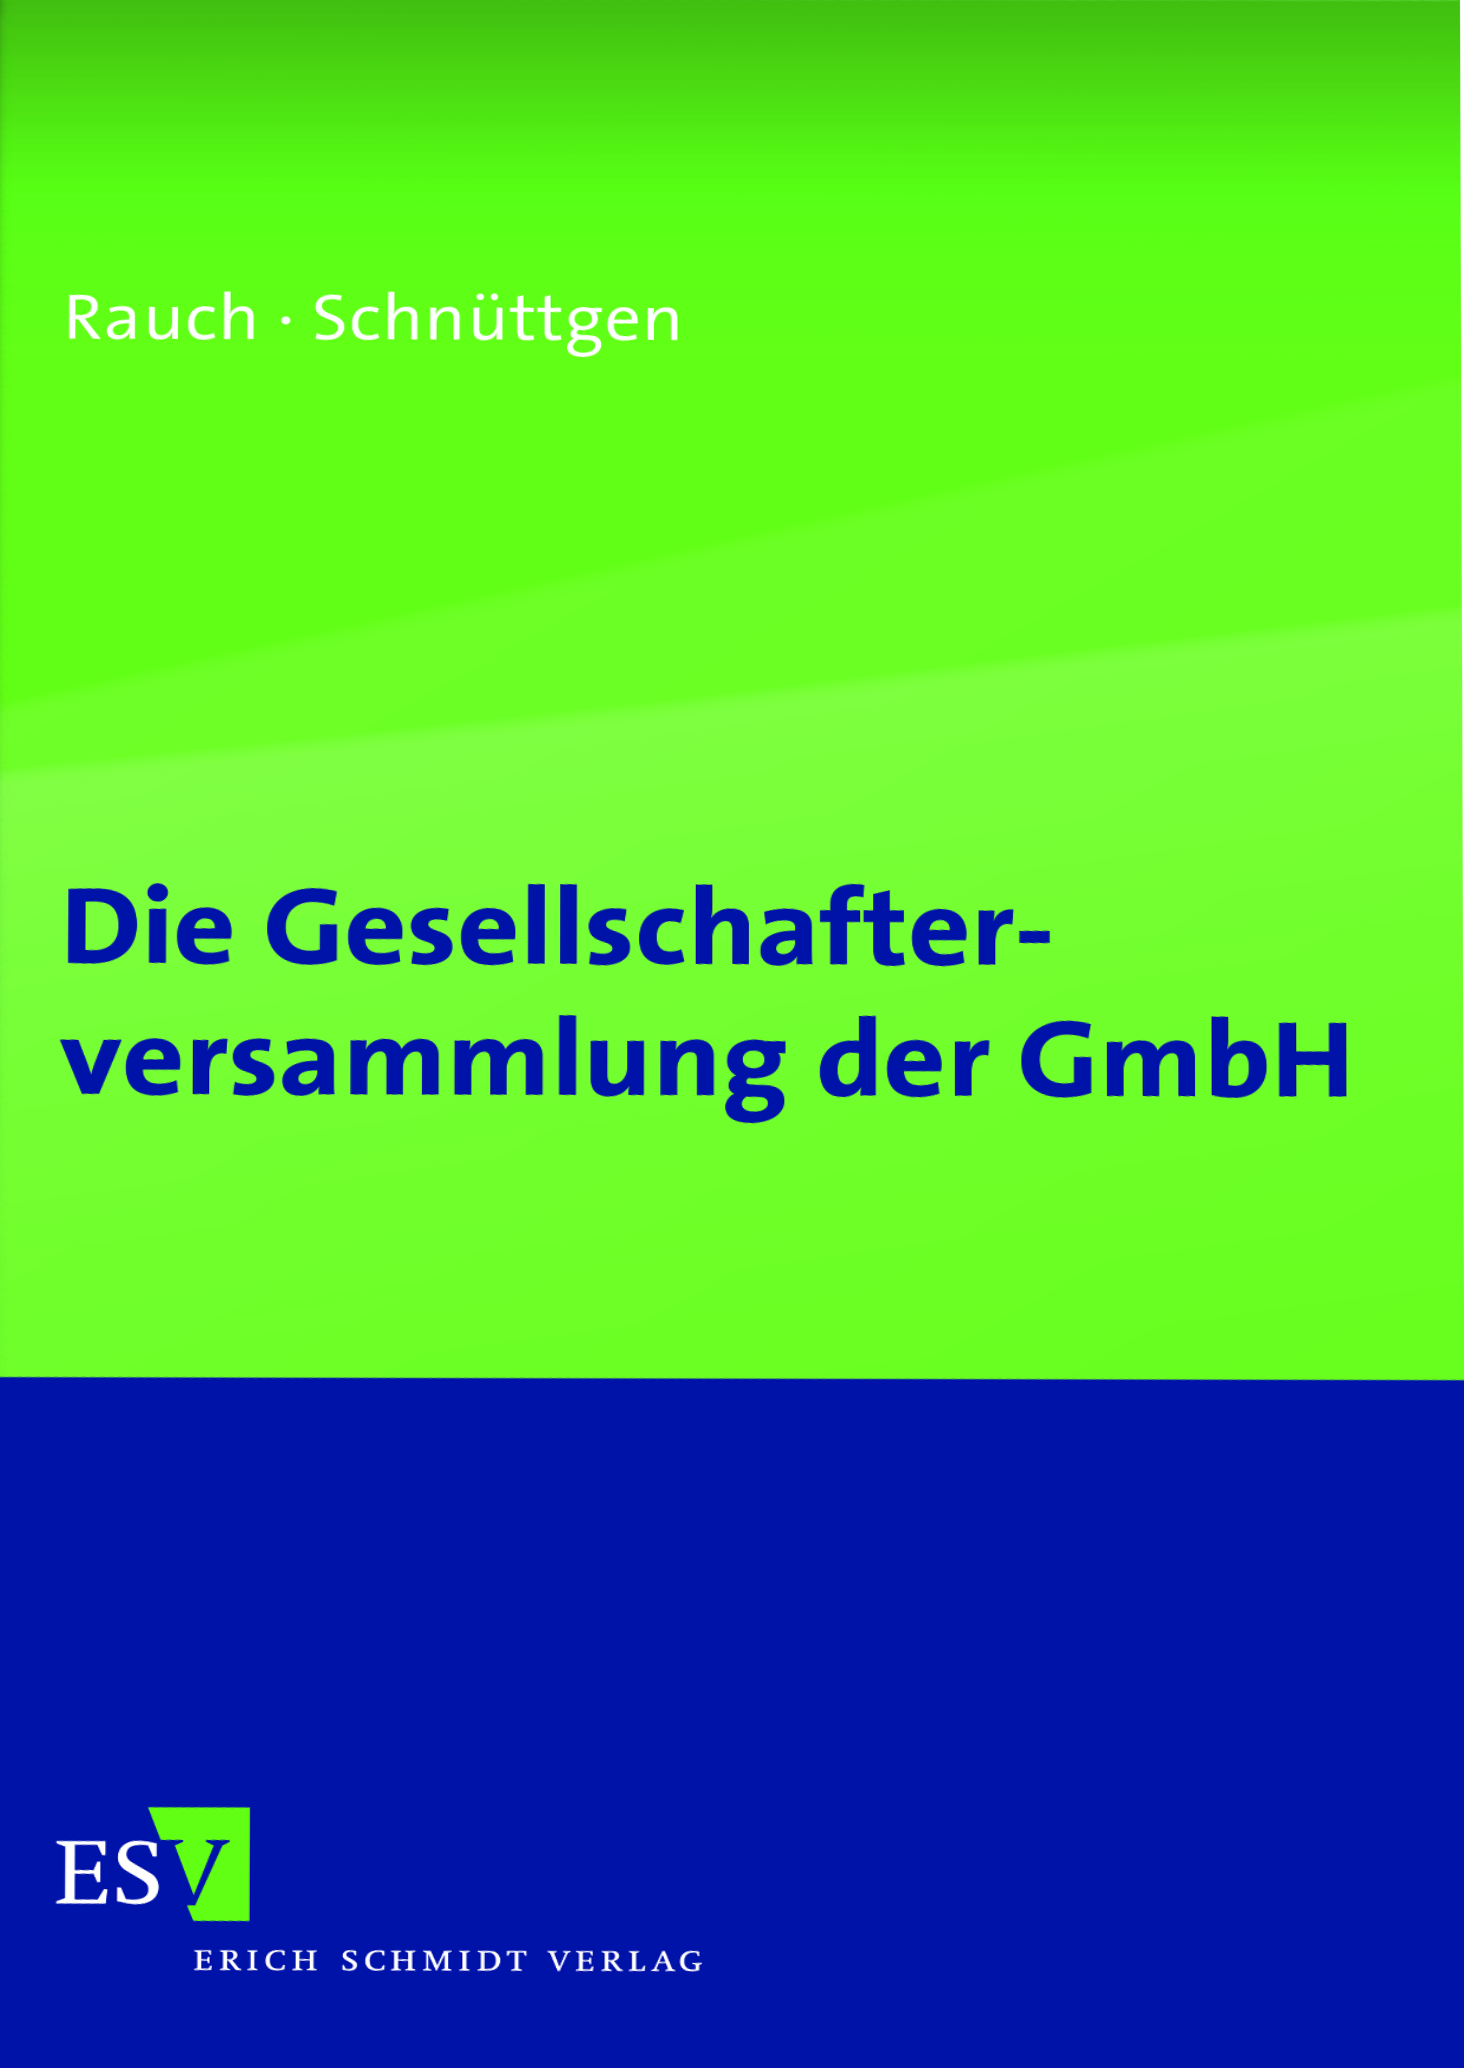 Abbildung: Die Gesellschafterversammlung der GmbH